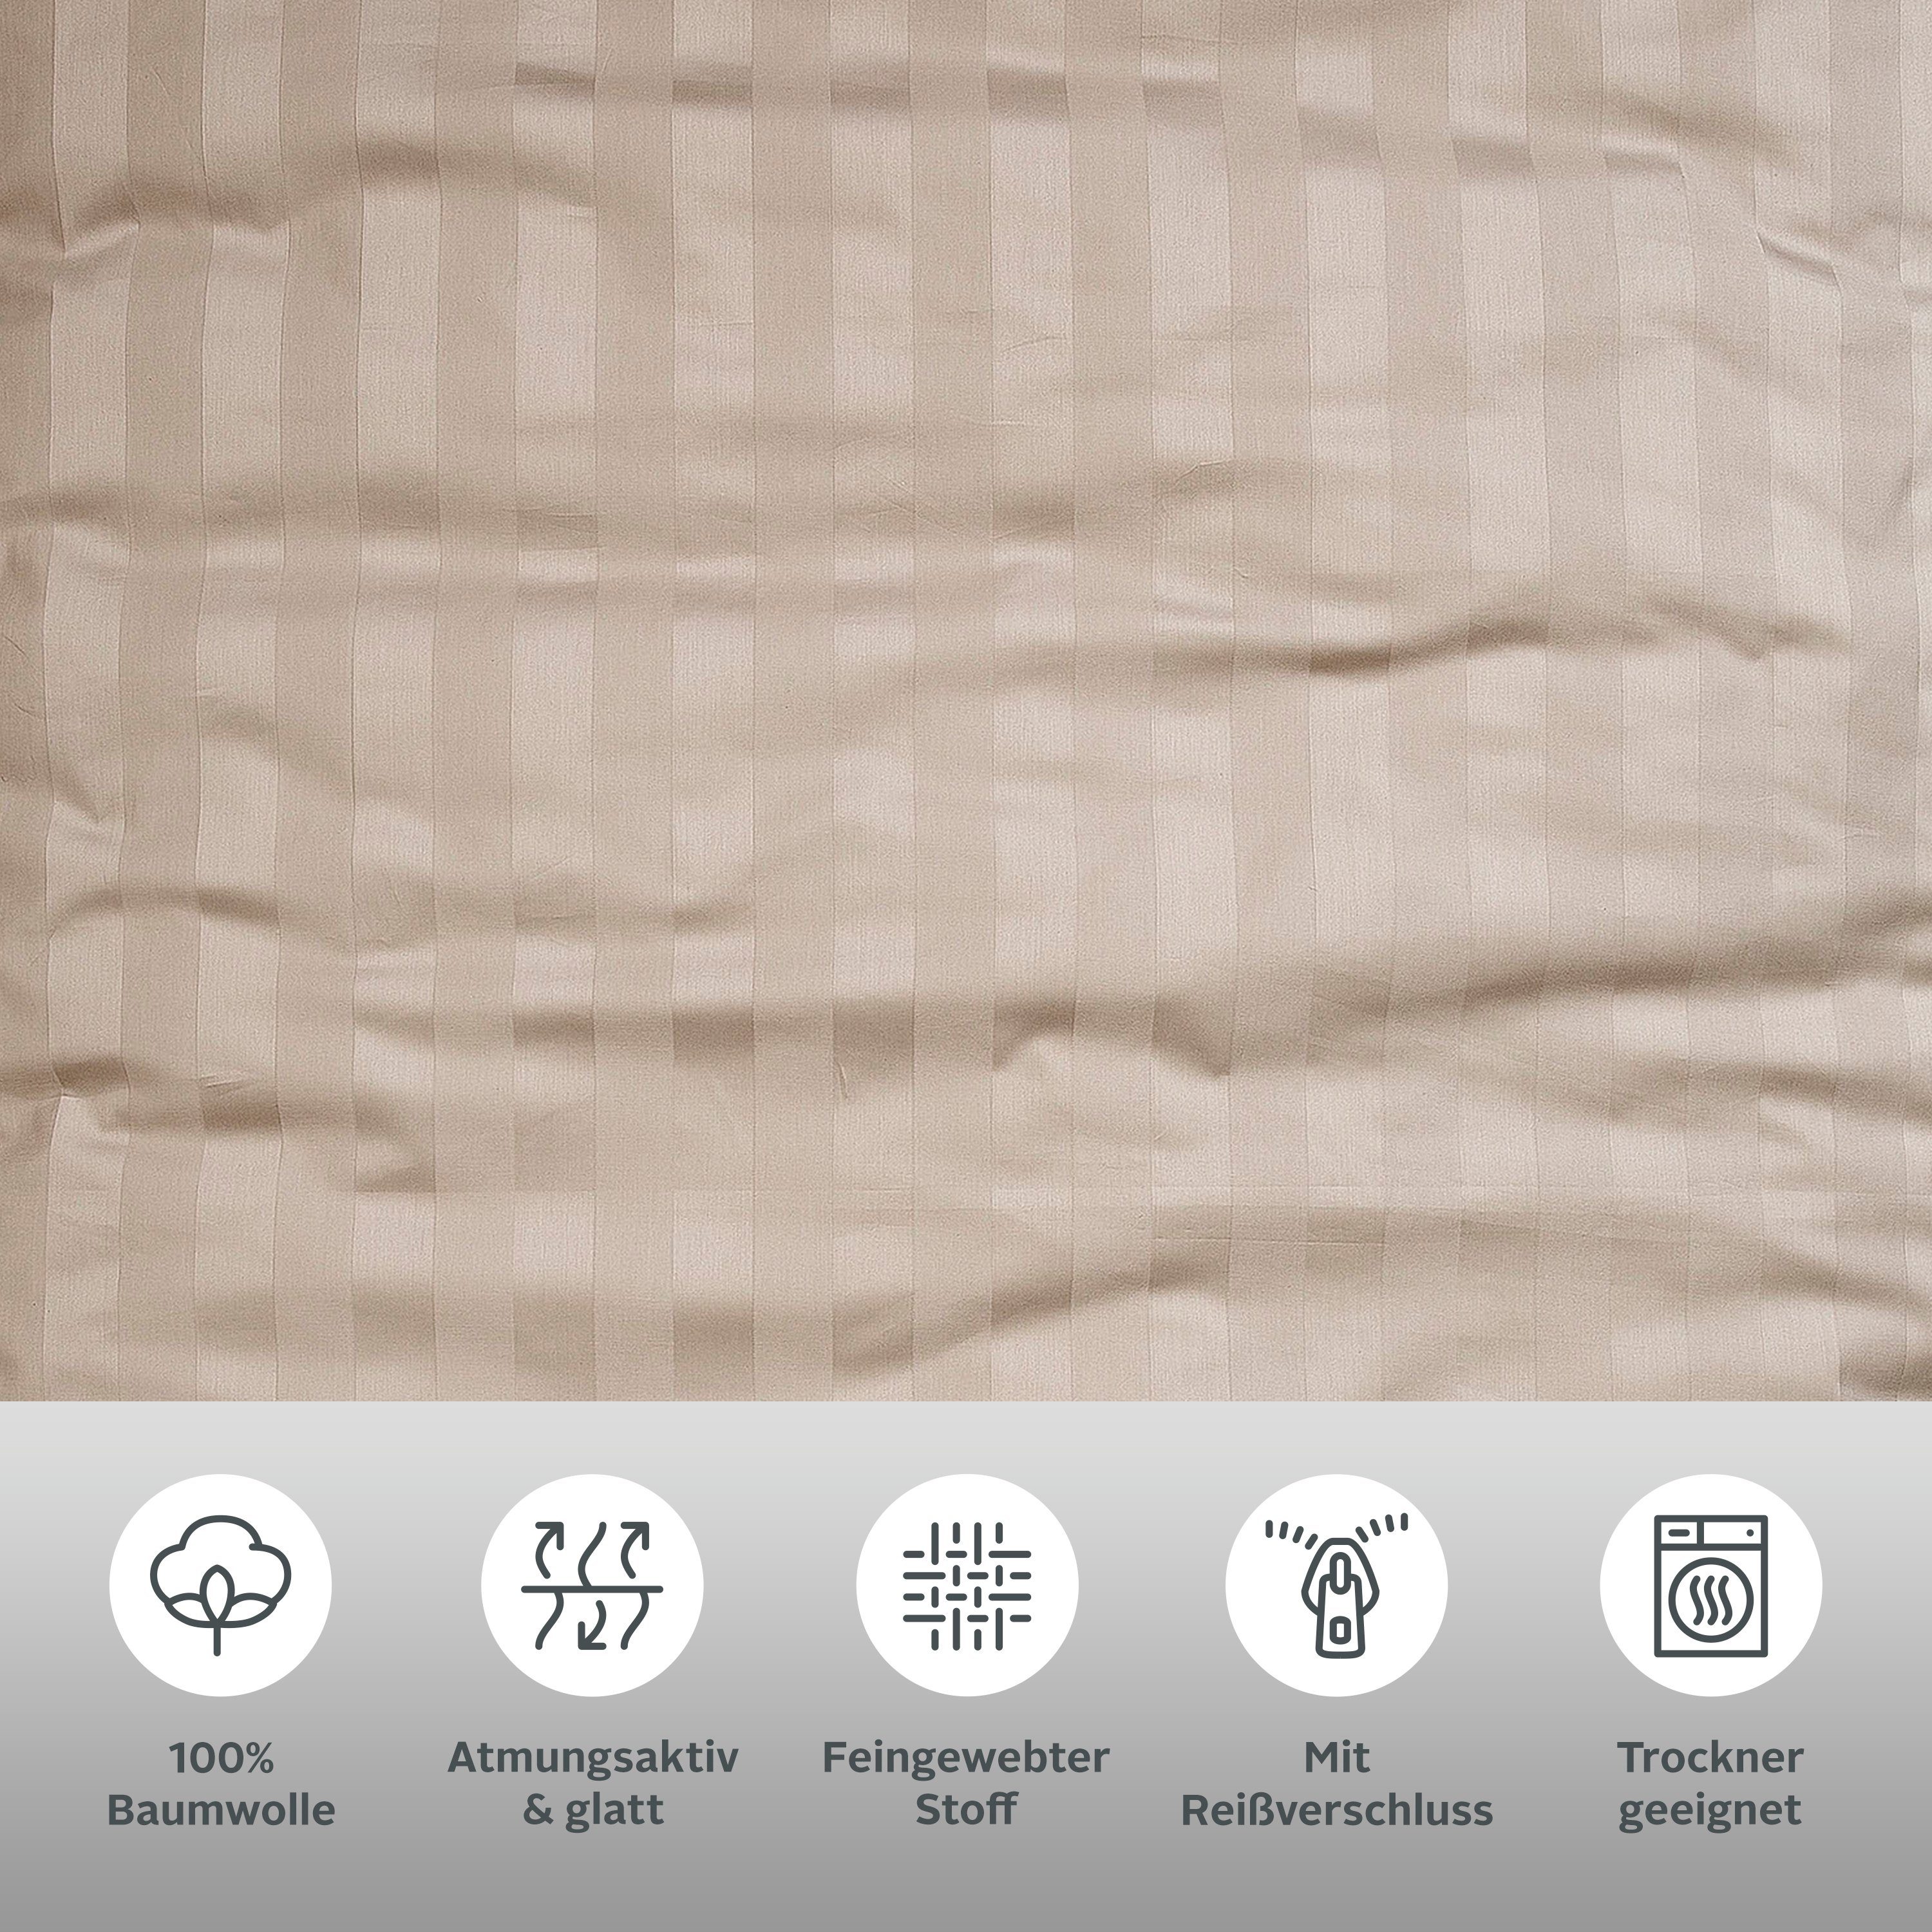 Satin-Qualität Bettwäsche Leonique, Gr. 2 in 135x200 in Satin, aus 155x220 taupe teilig, Bettwäsche oder zeitlose Malia Bettwäsche cm, Baumwolle,